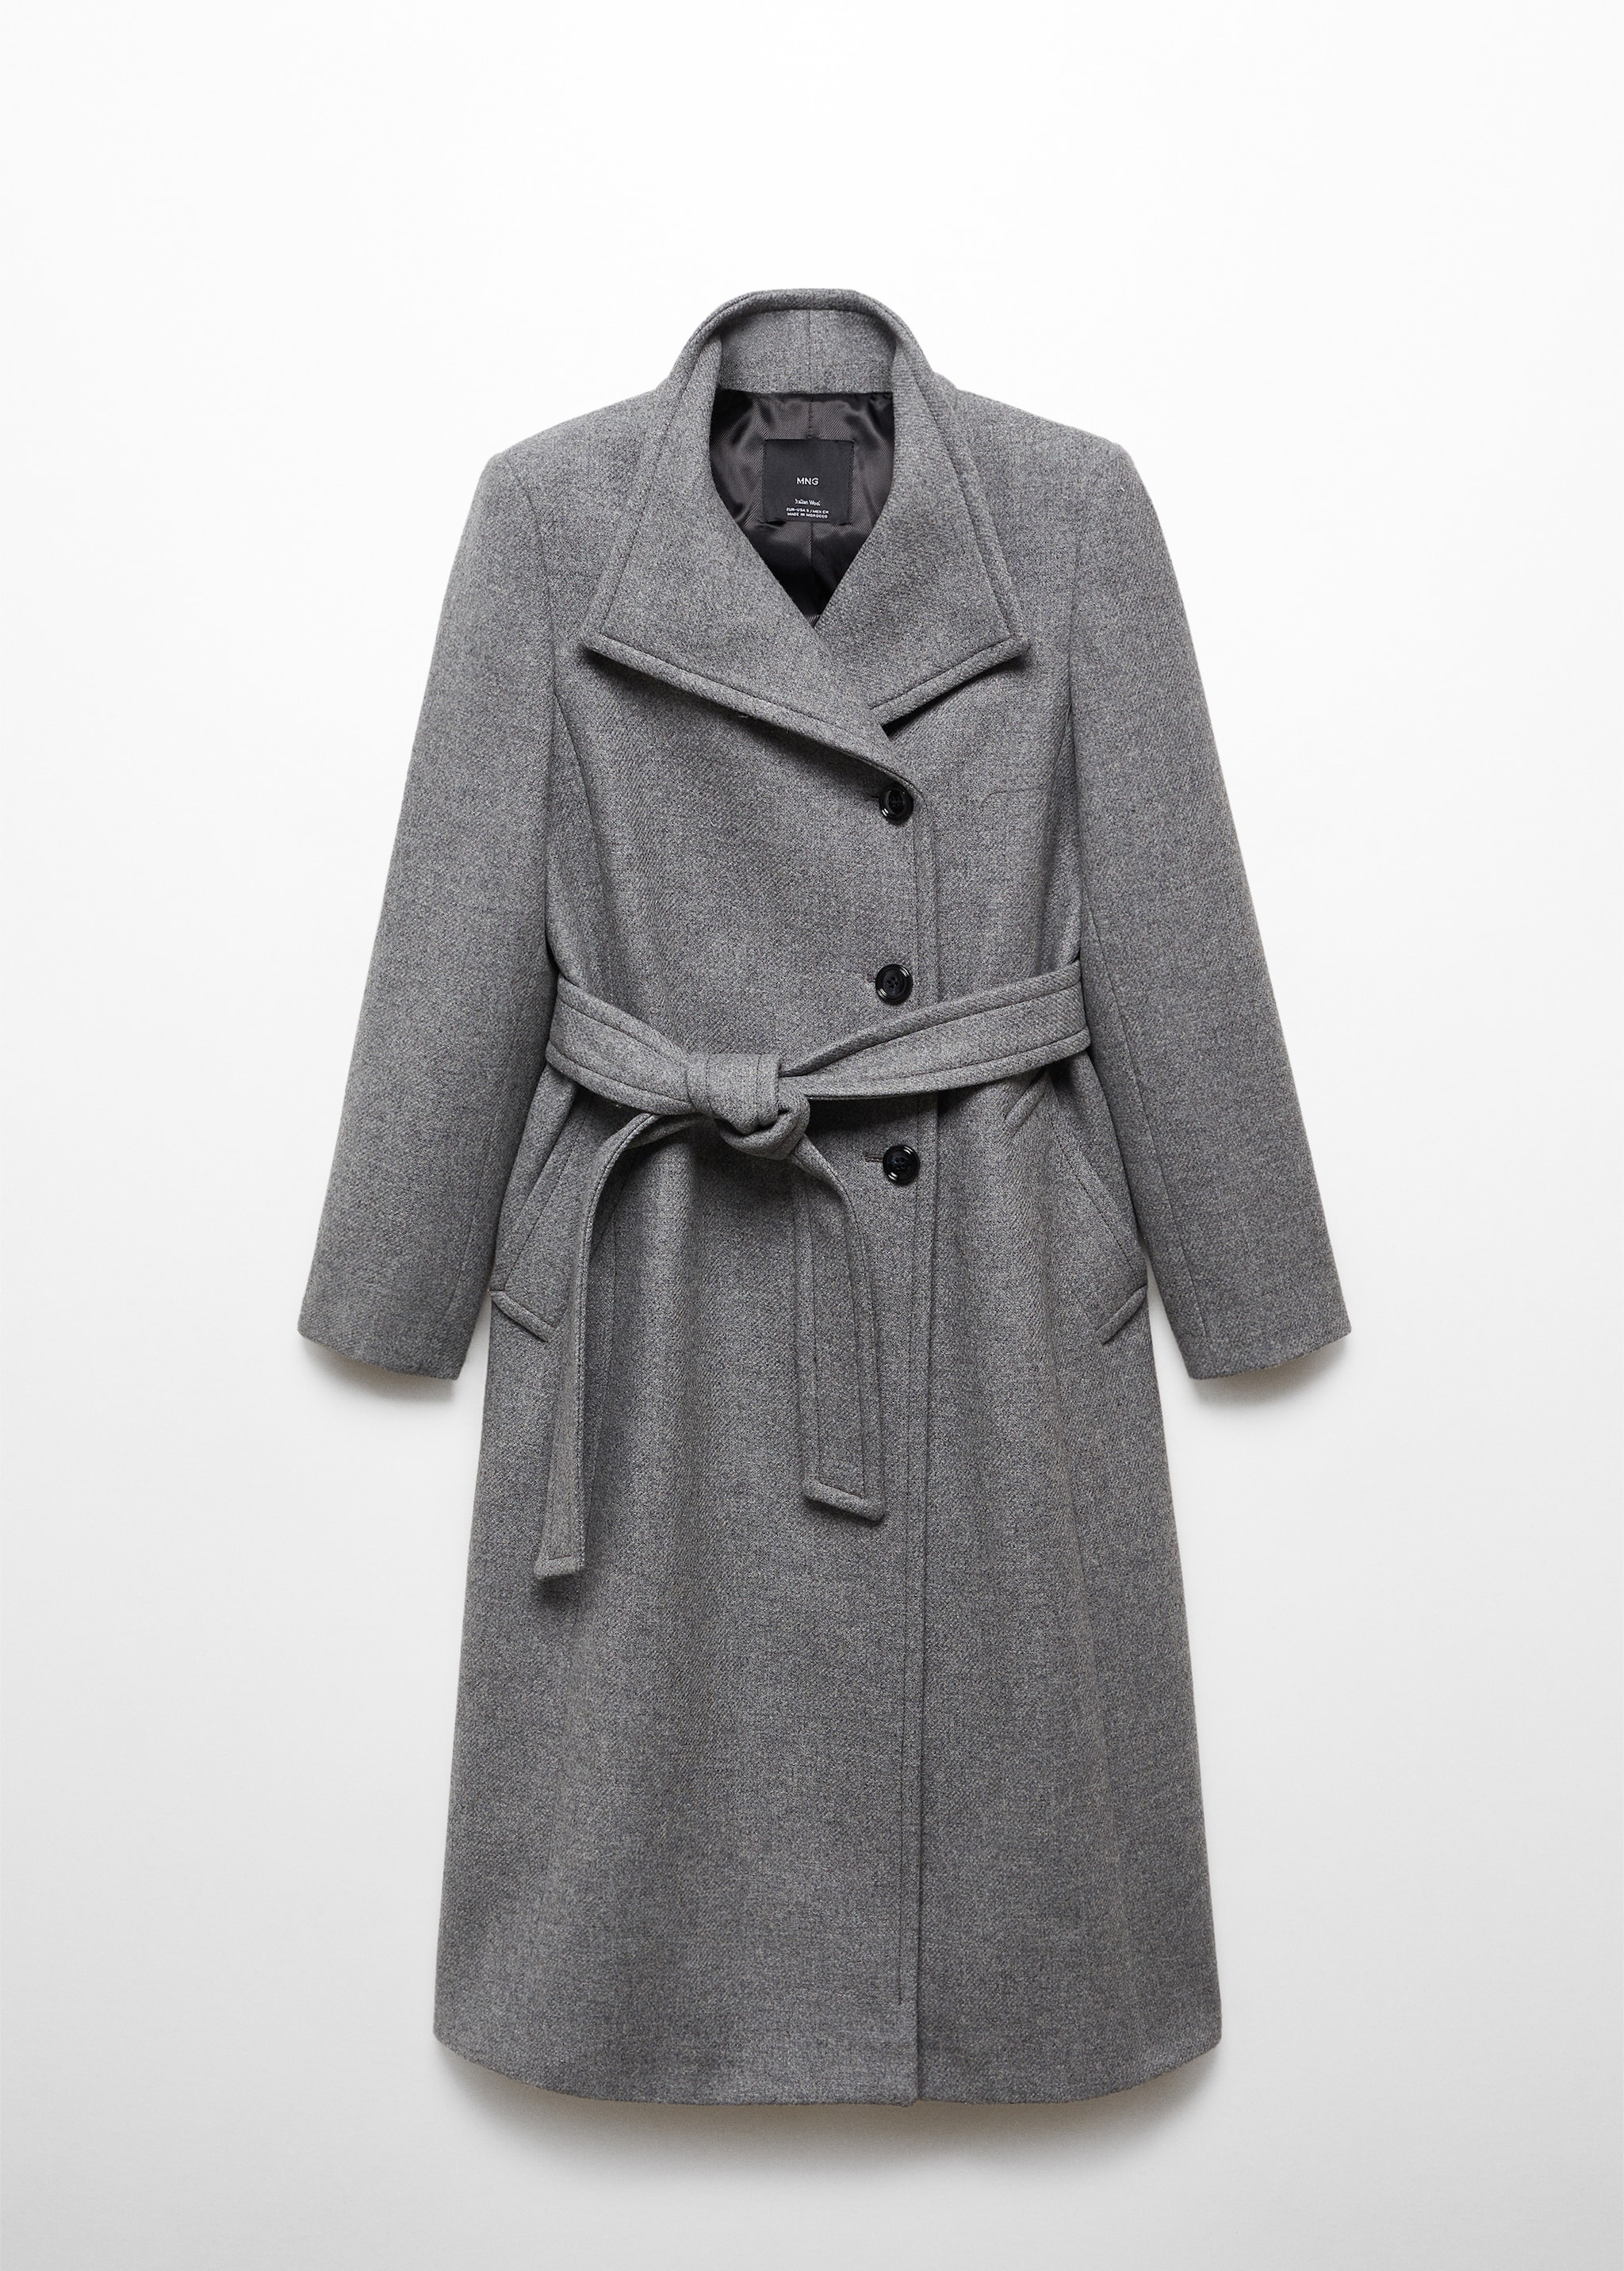 Παλτό μαλλί manteco ζώνη - Προϊόν χωρίς μοντέλο